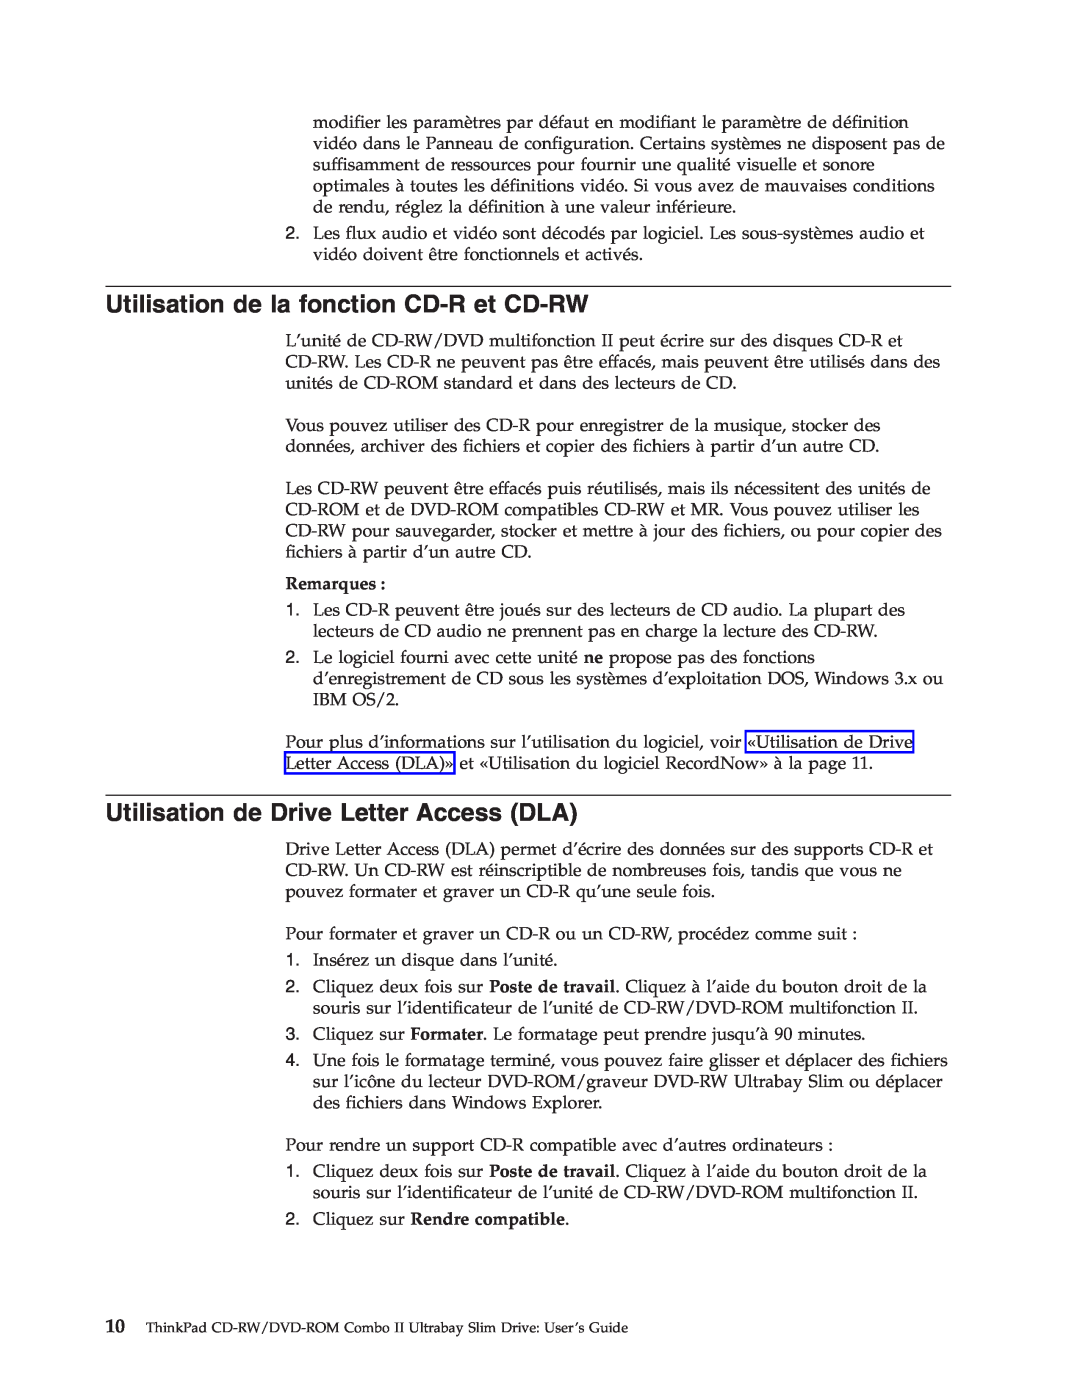 IBM 73P3292 manual Utilisation de la fonction CD-R et CD-RW, Utilisation de Drive Letter Access DLA, Remarques 